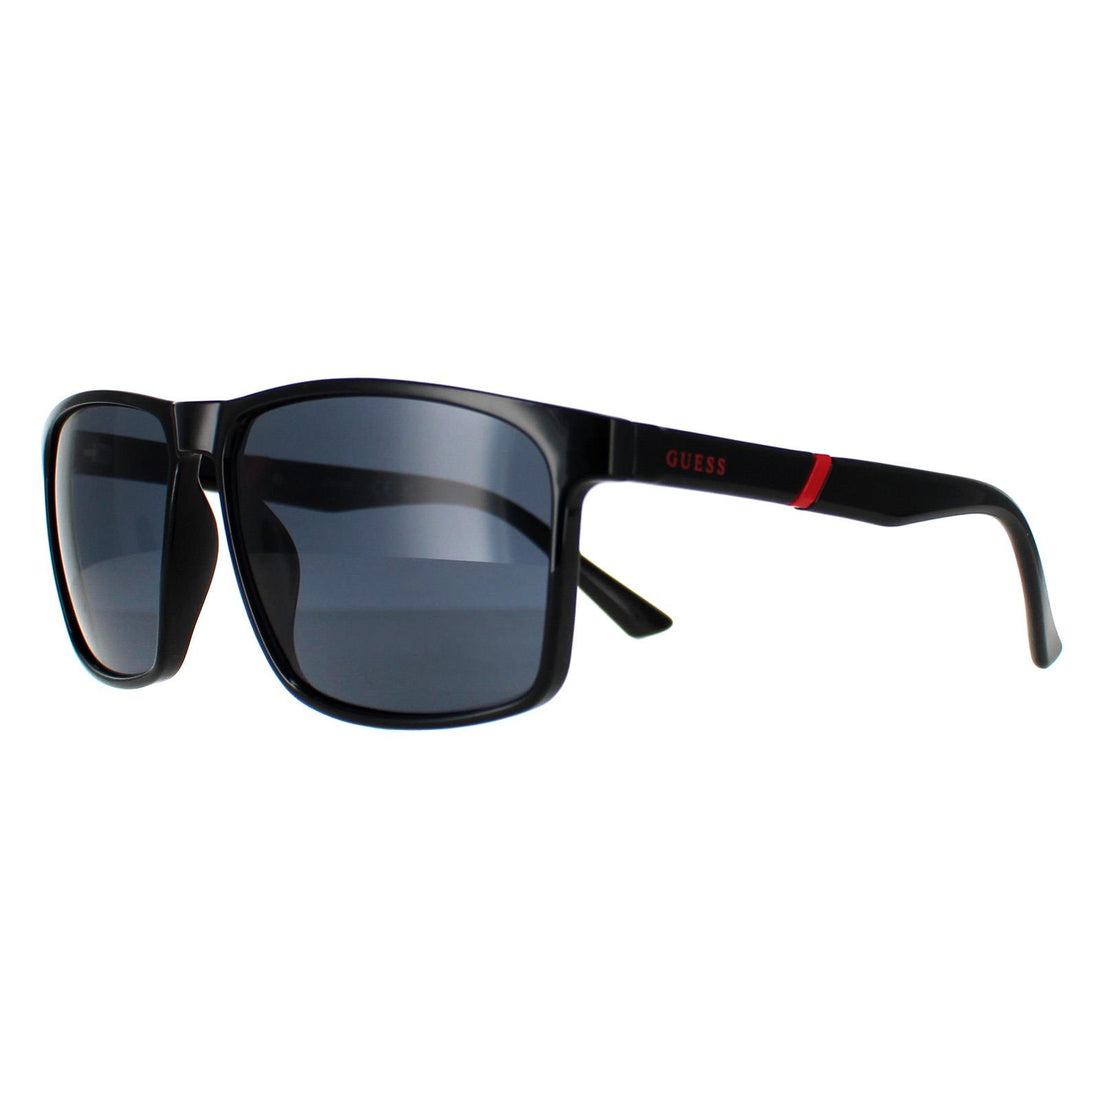 Guess Sunglasses GF0255 01A Shiny Black Smoke